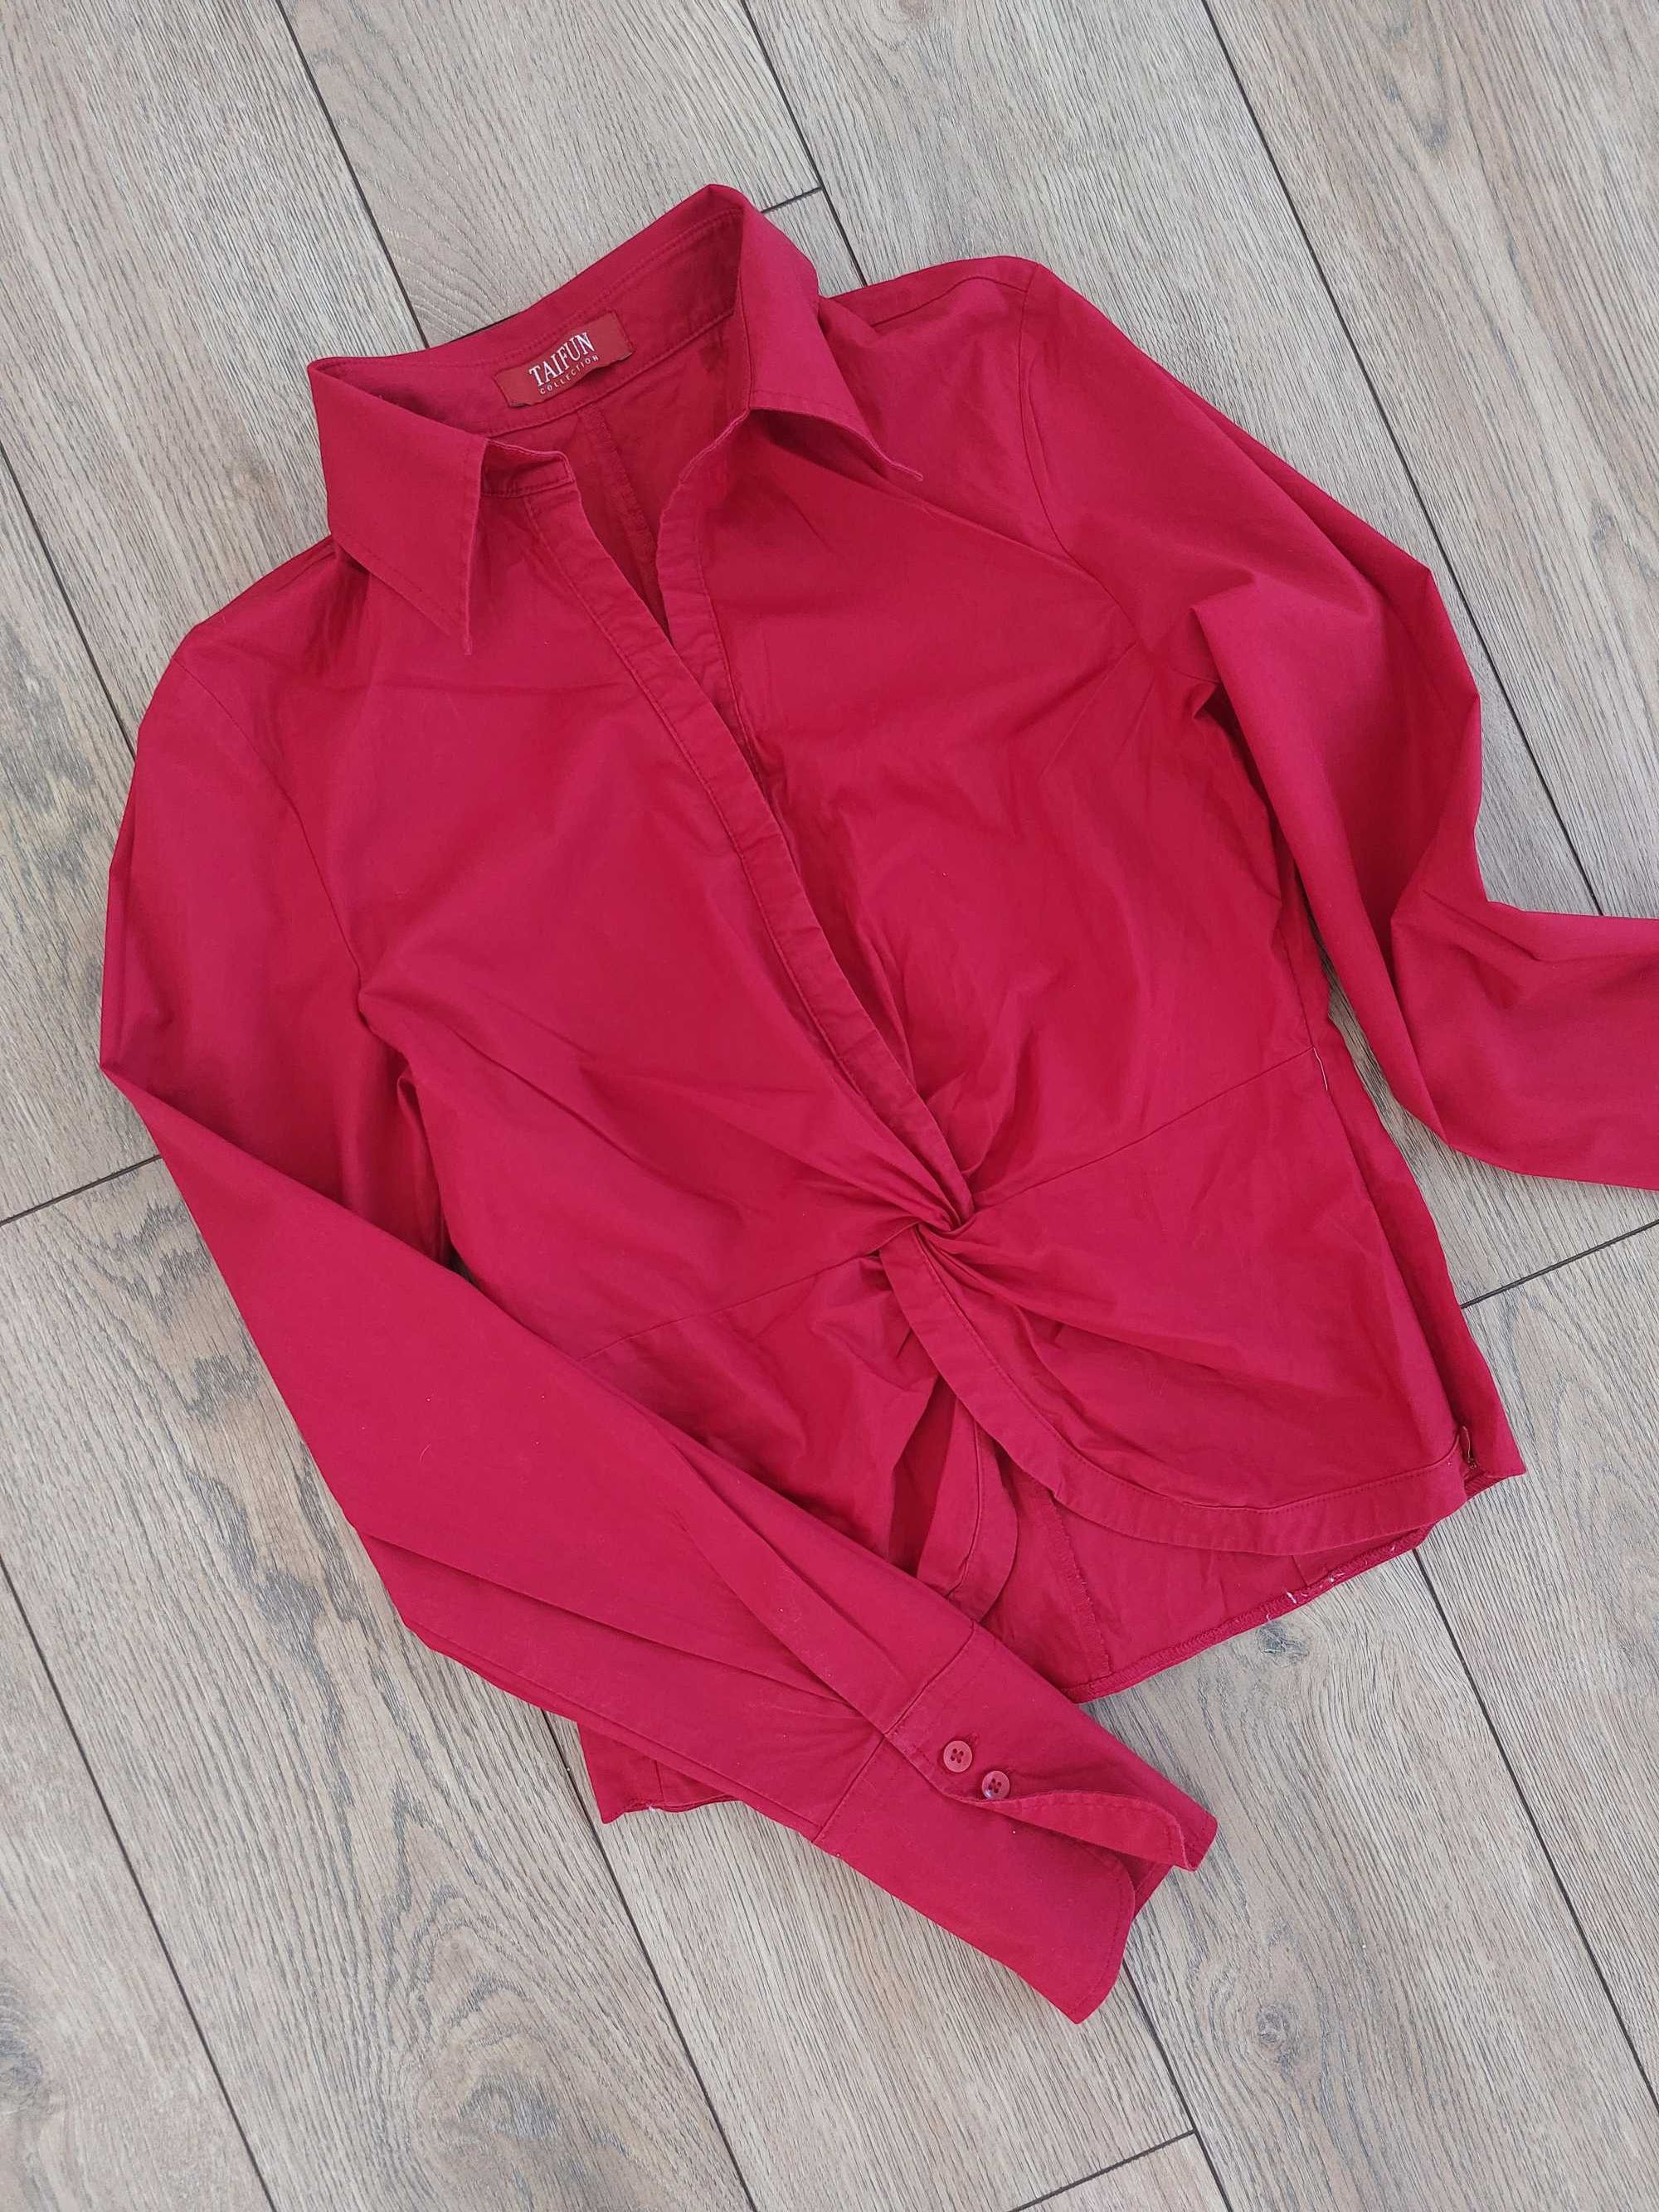 Czerwona koszula damska z przeplotem stan bdb